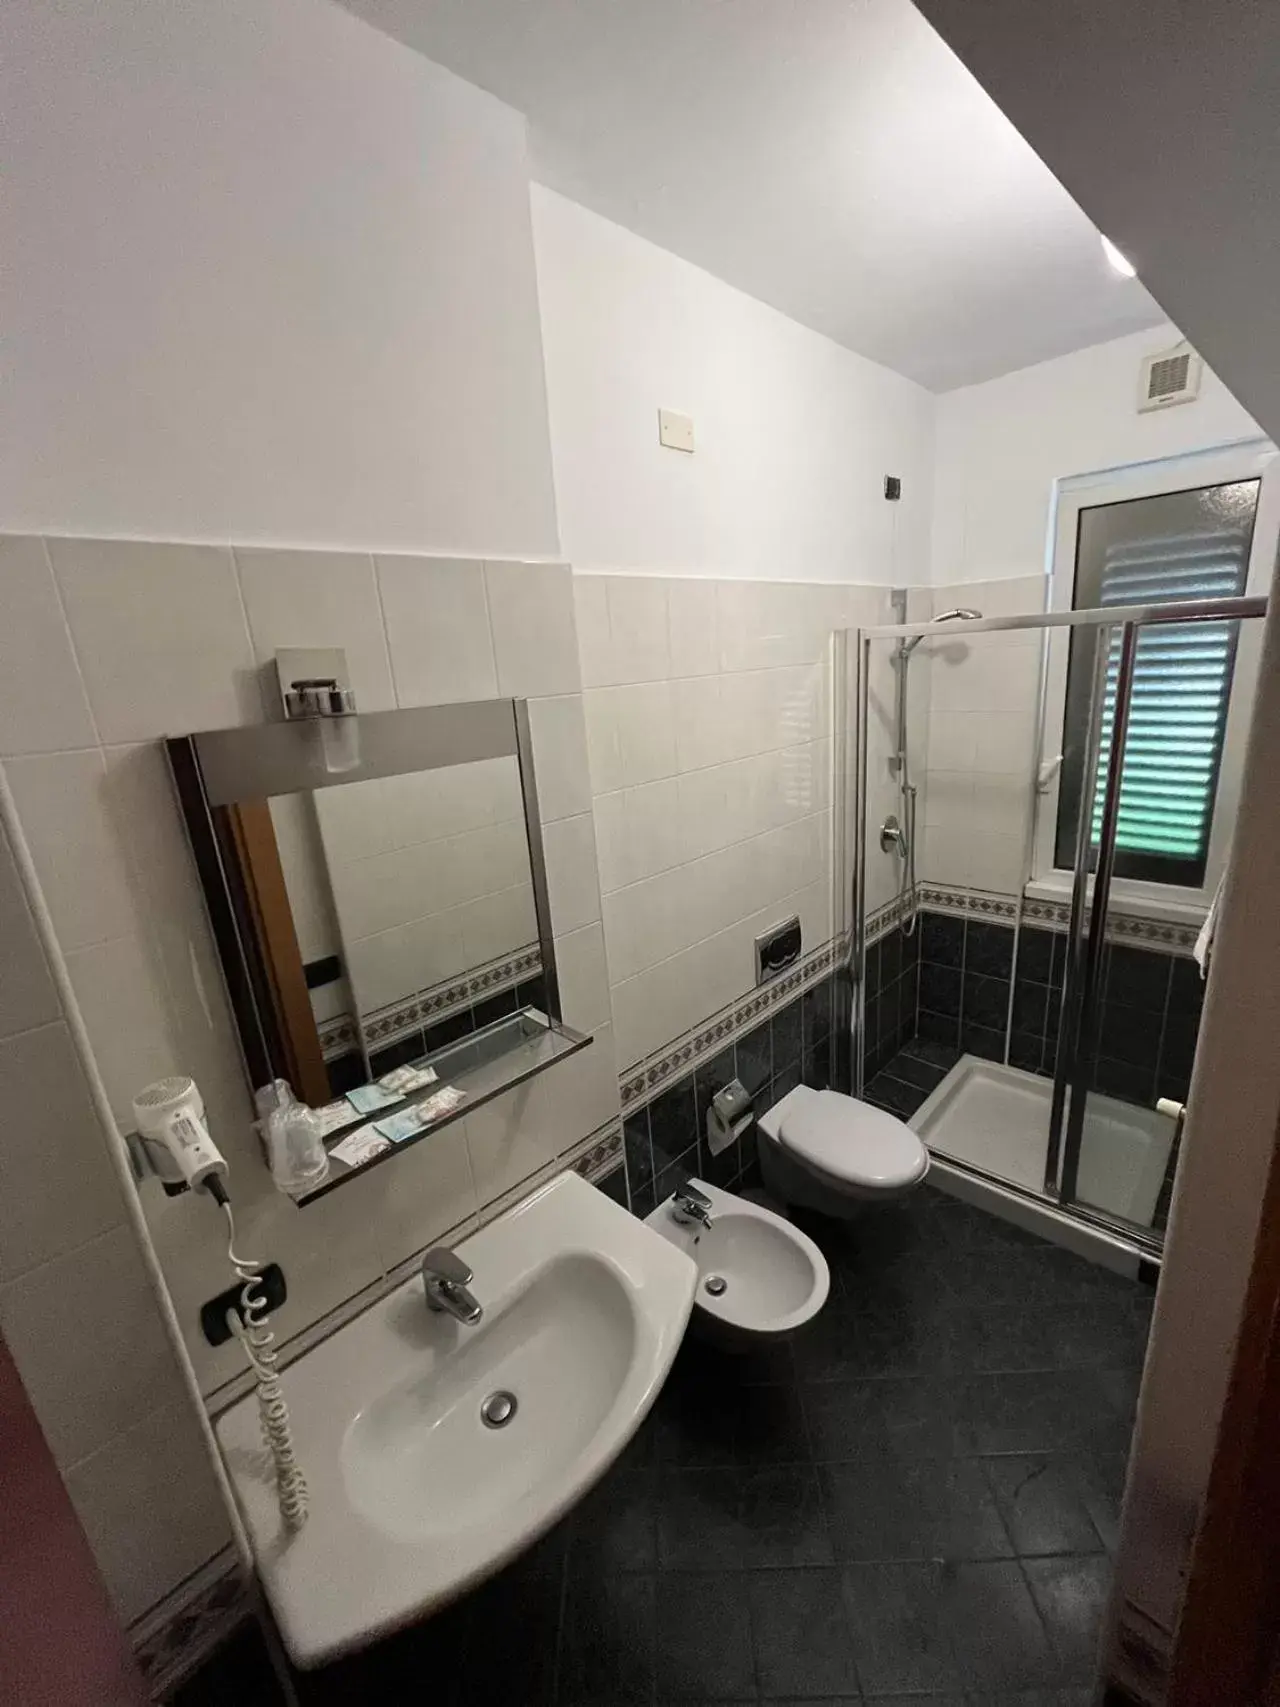 Bathroom in Hotel Parma